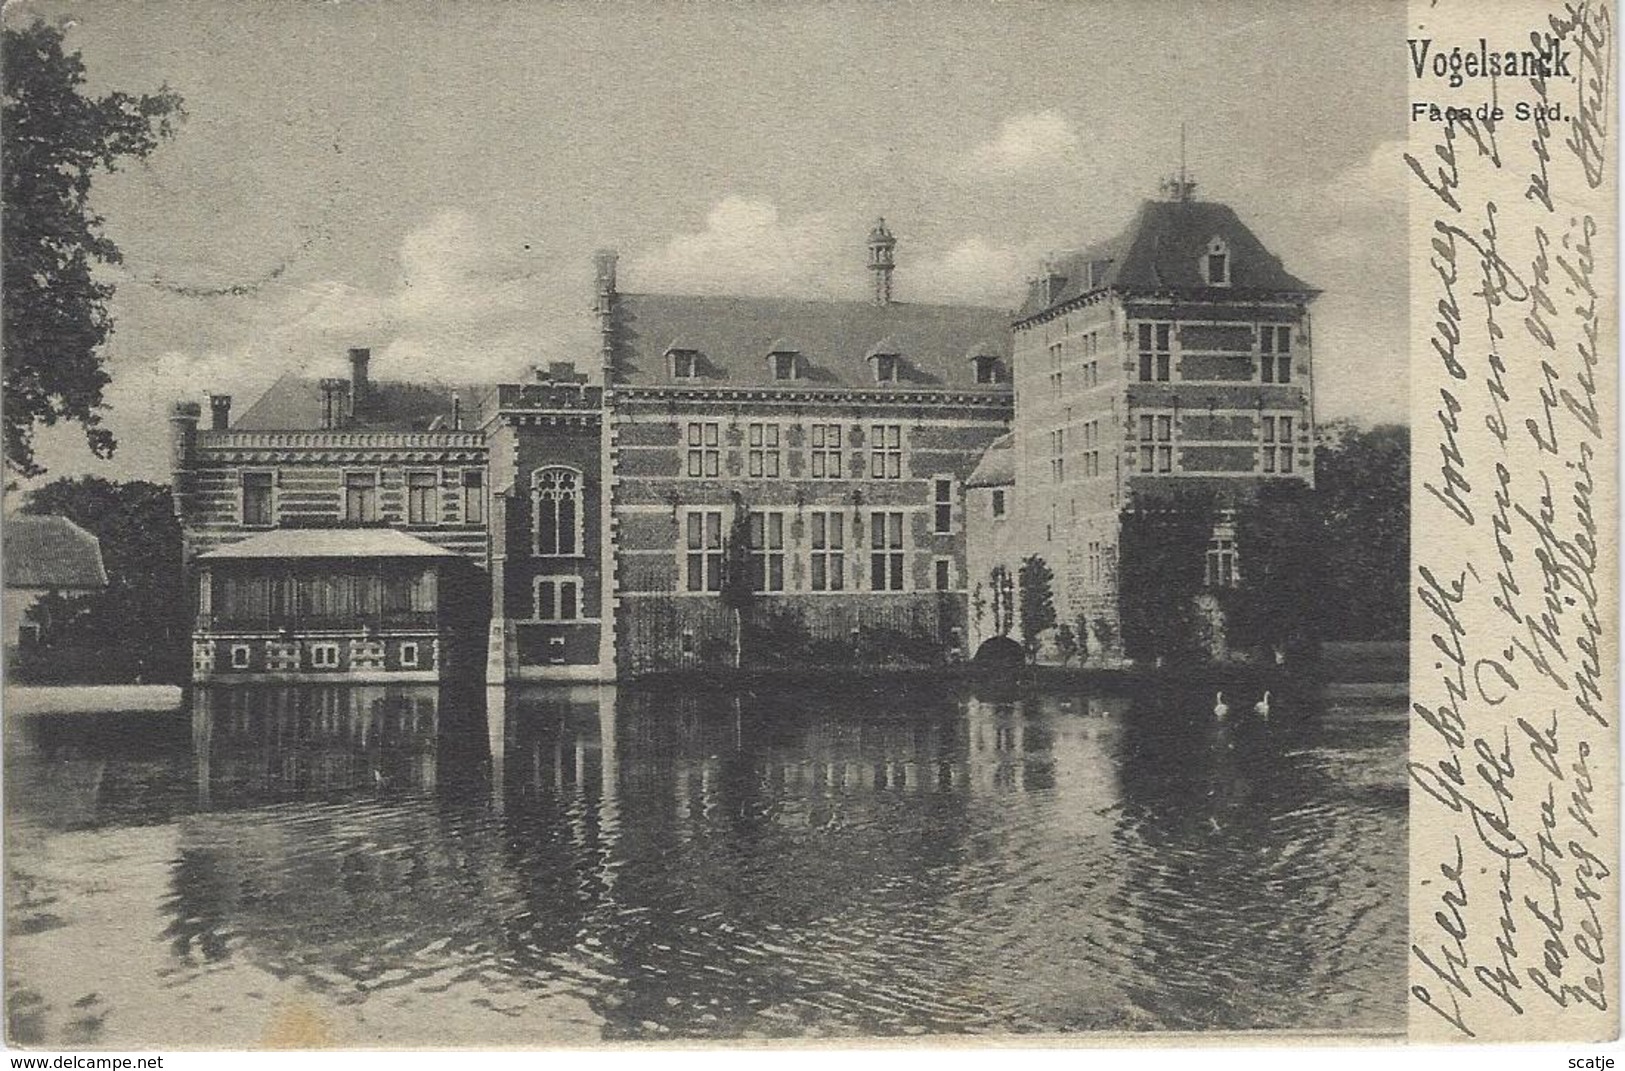 Vogelsanck.  -   Façade Sud    -   1905  -  Avennes  -   Bruxelles - Heusden-Zolder